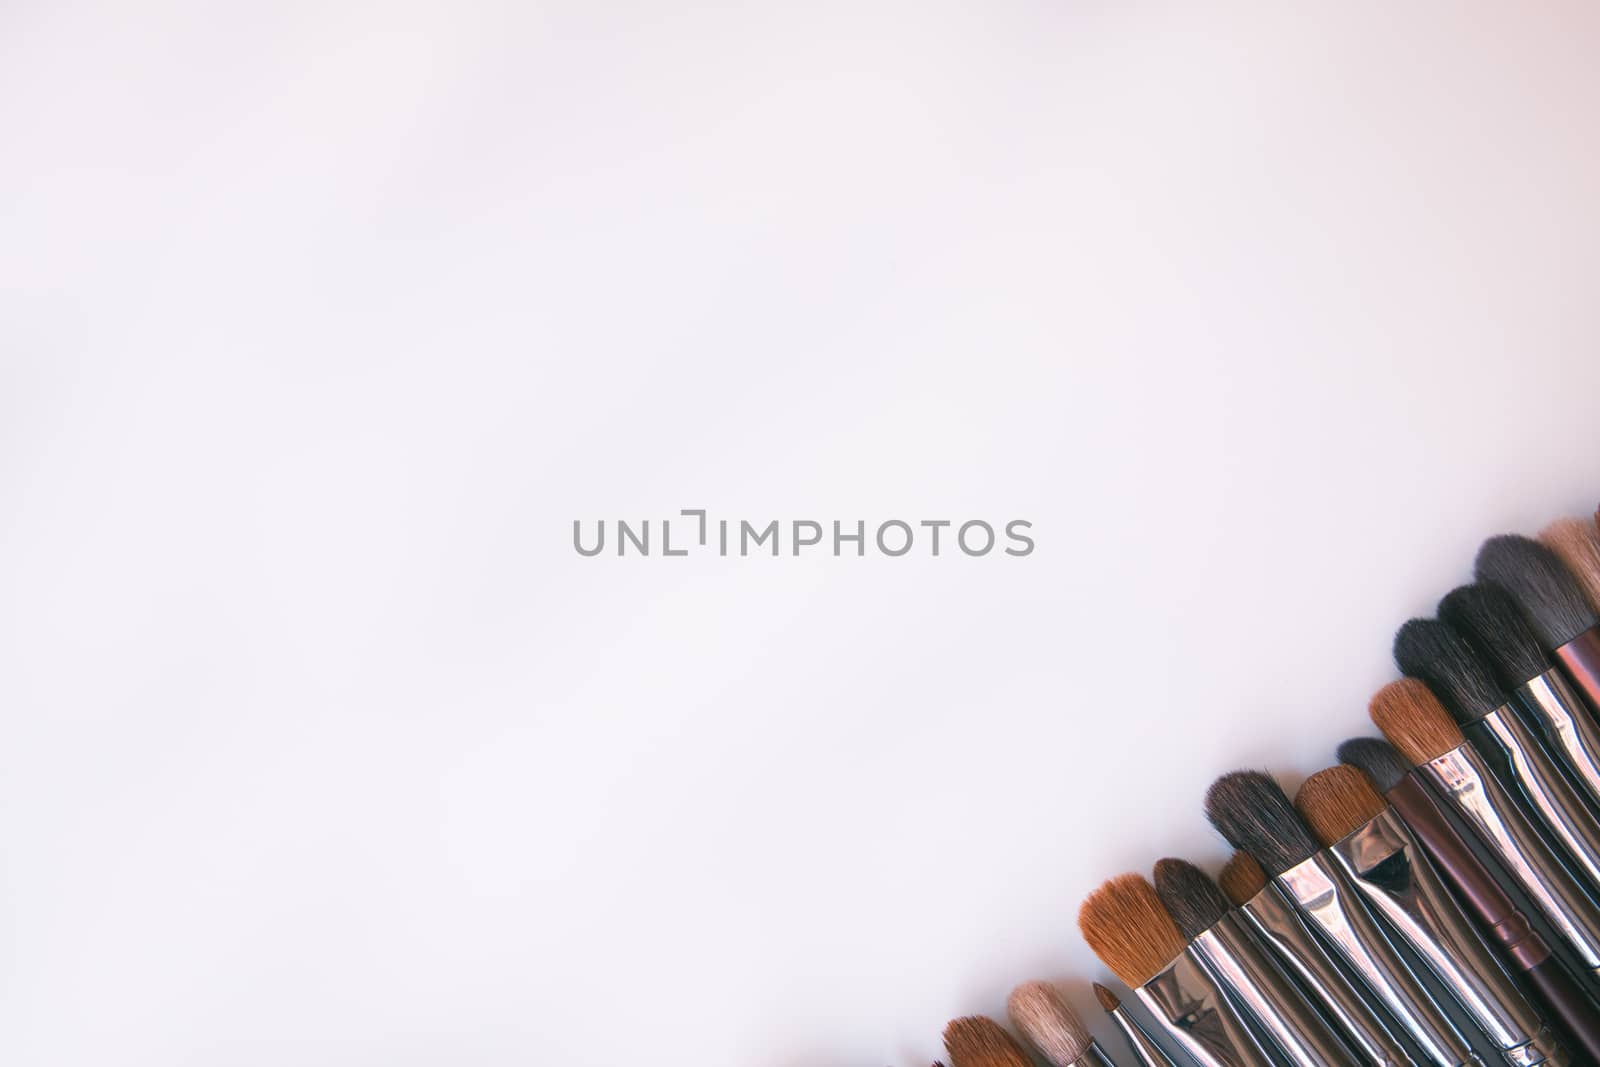 Makeup brushes set on white background by tadeush89